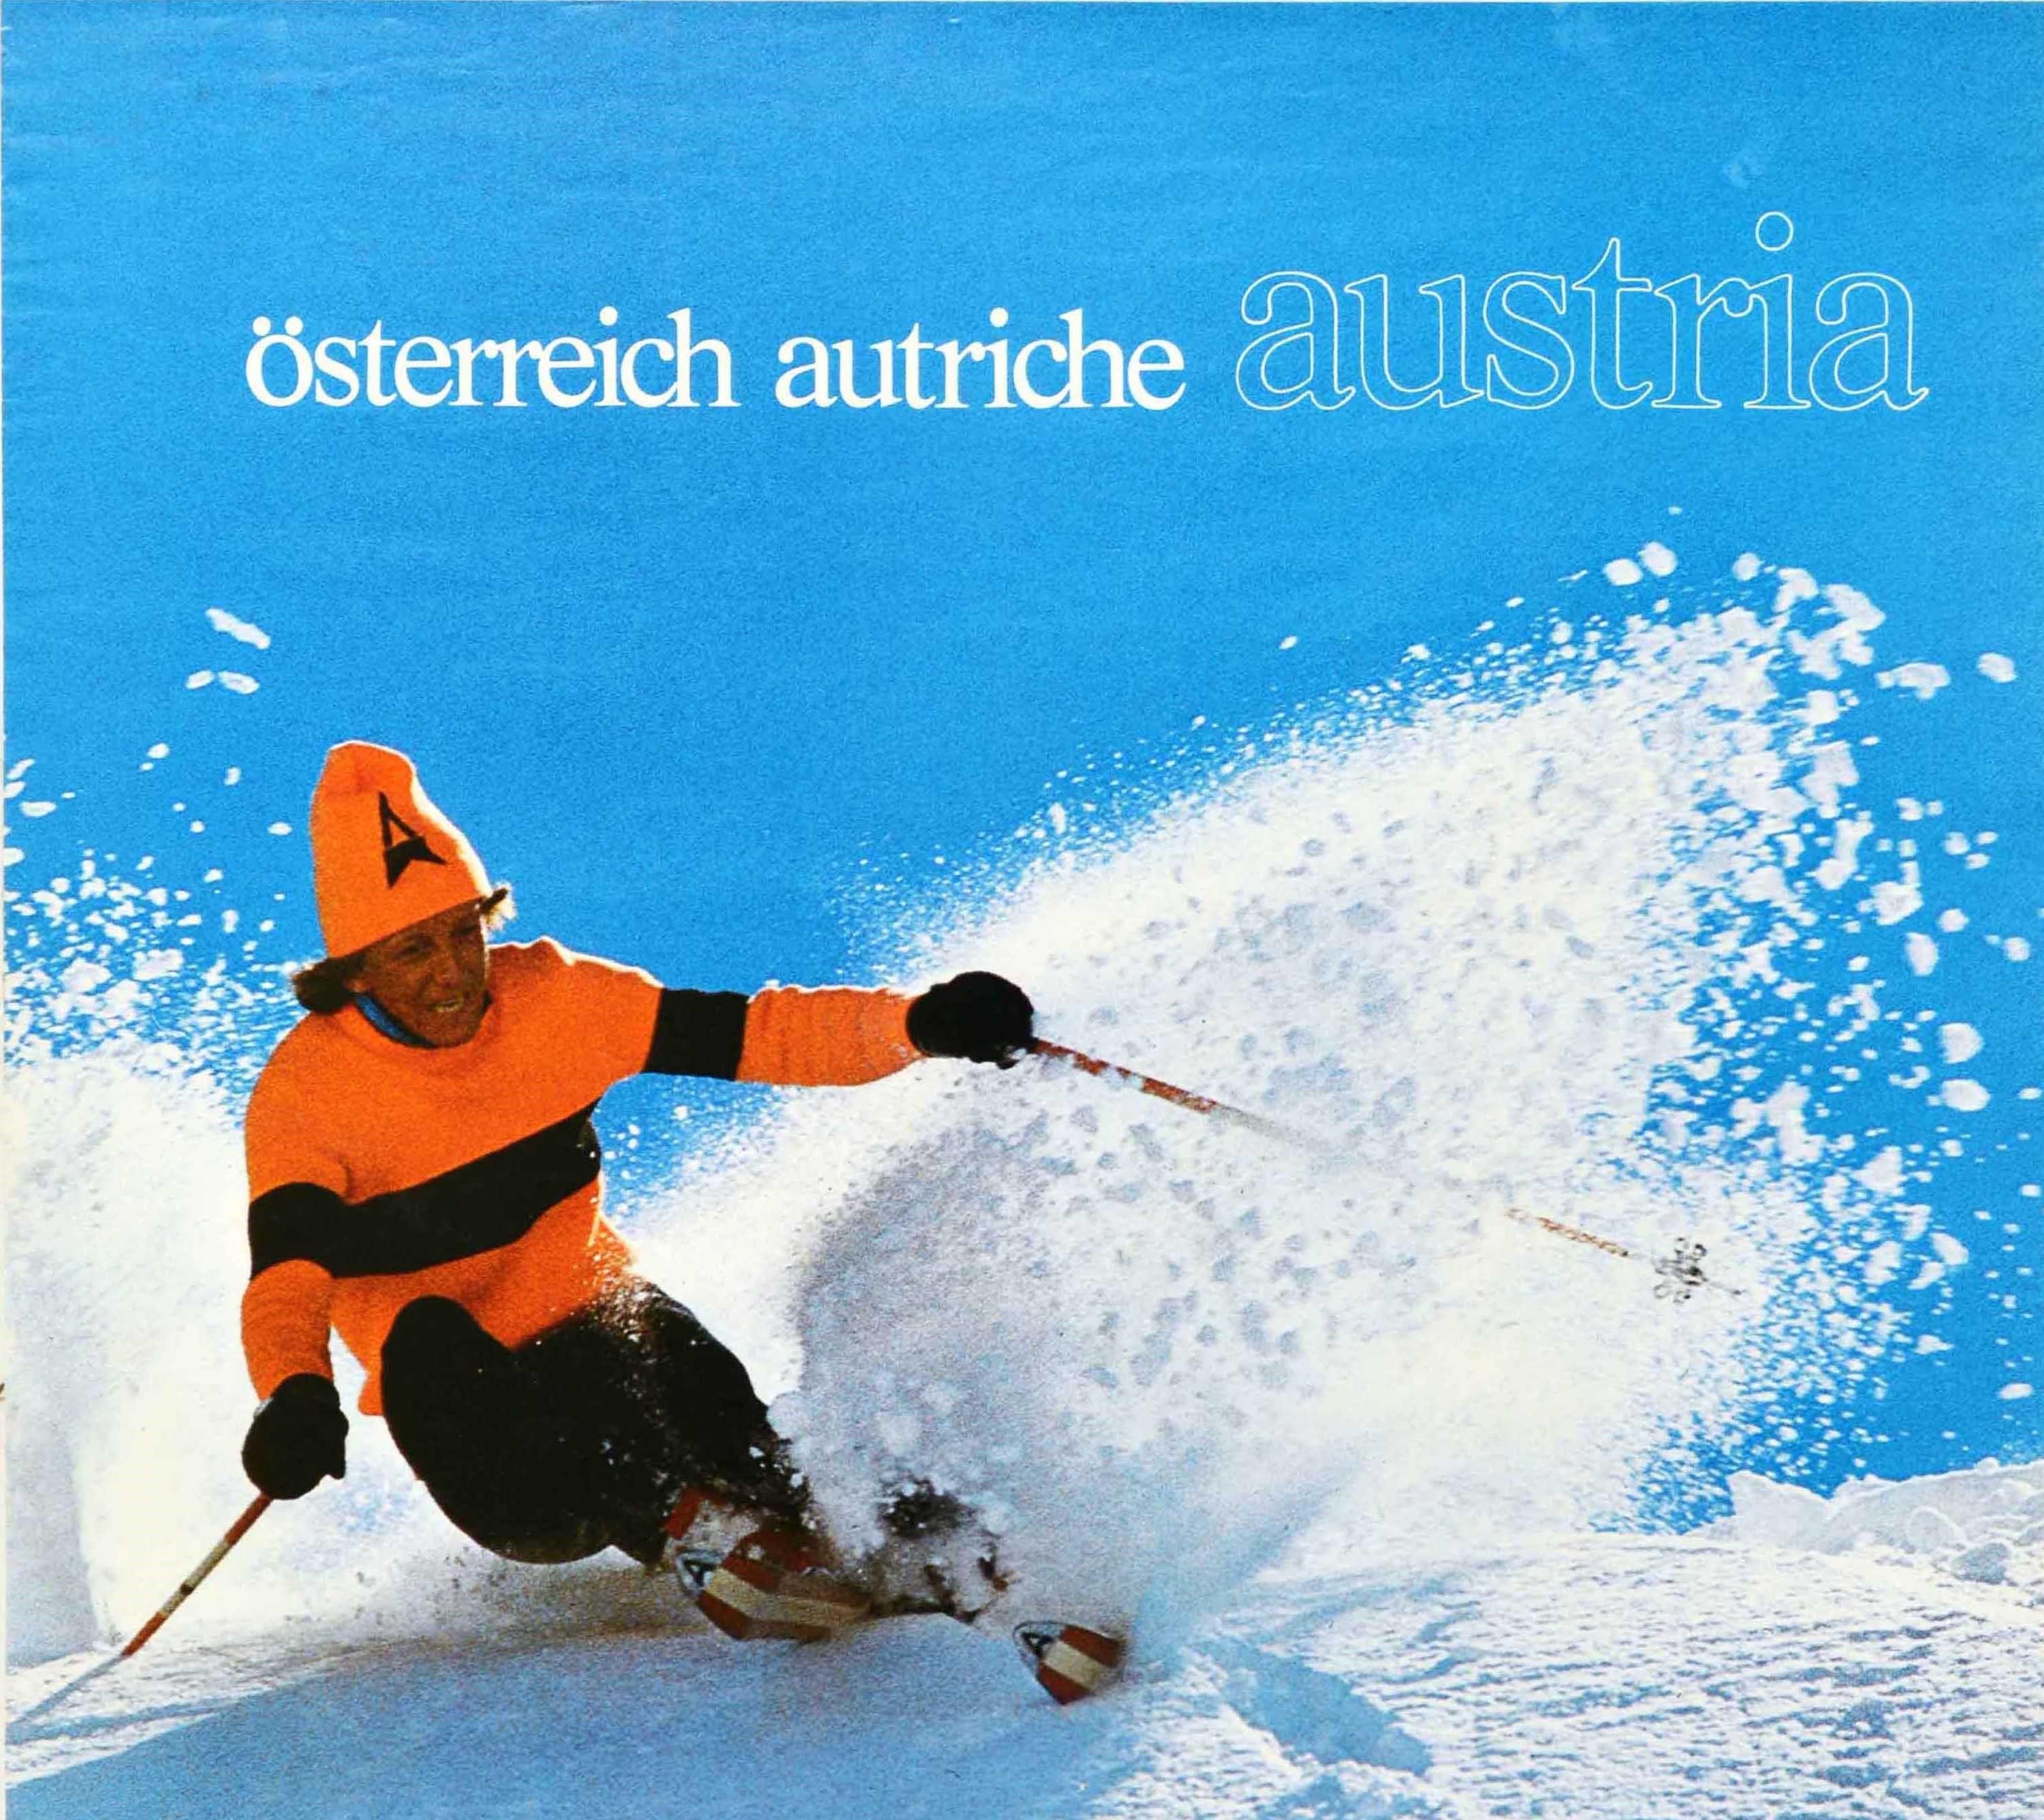 Original Vintage Ski Poster Osterreich Autriche Austria Winter Sport Travel  - Print by Unknown